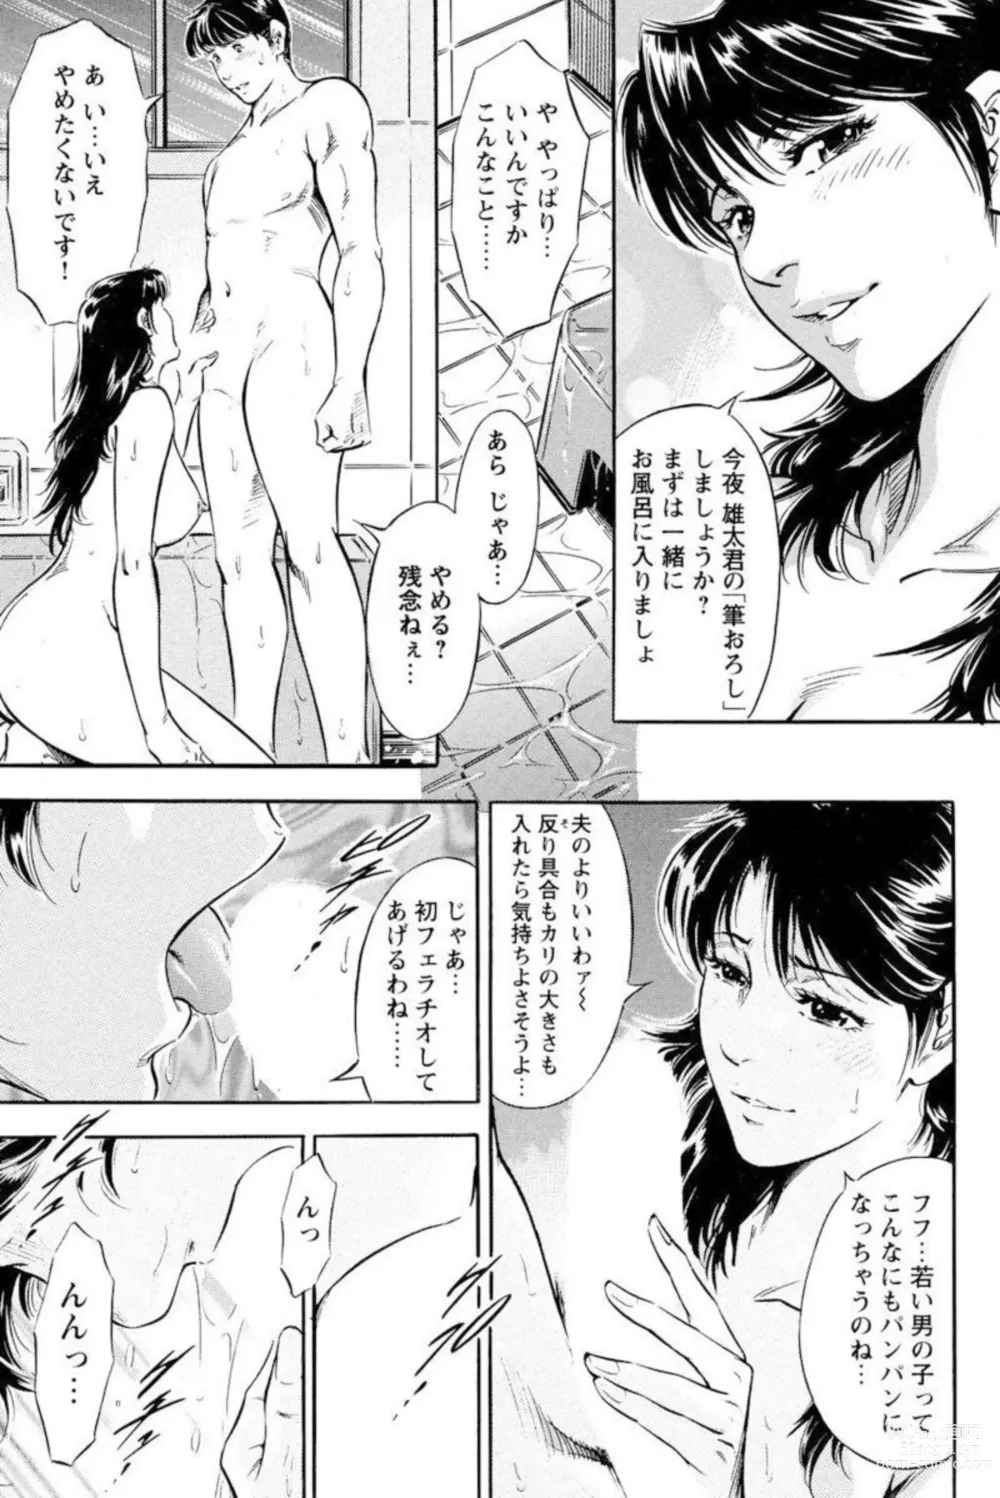 Page 11 of manga Yūjin no Haha ni Yukkuri Dashi re 【 Bunsatsuban 】1